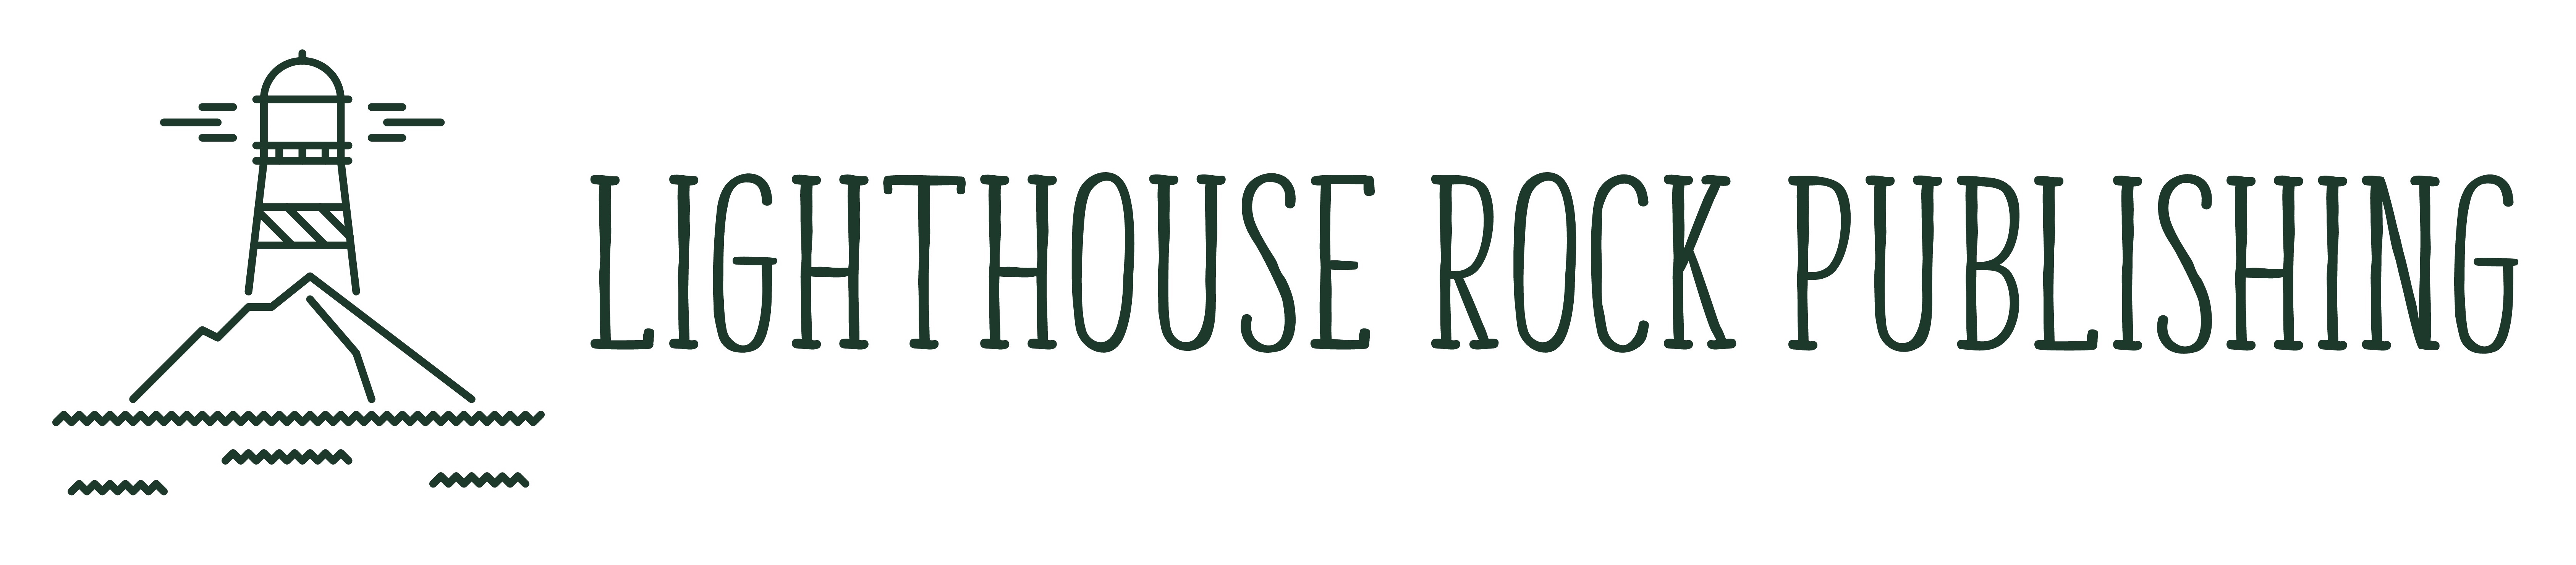 Lighthouse Rock Publishing